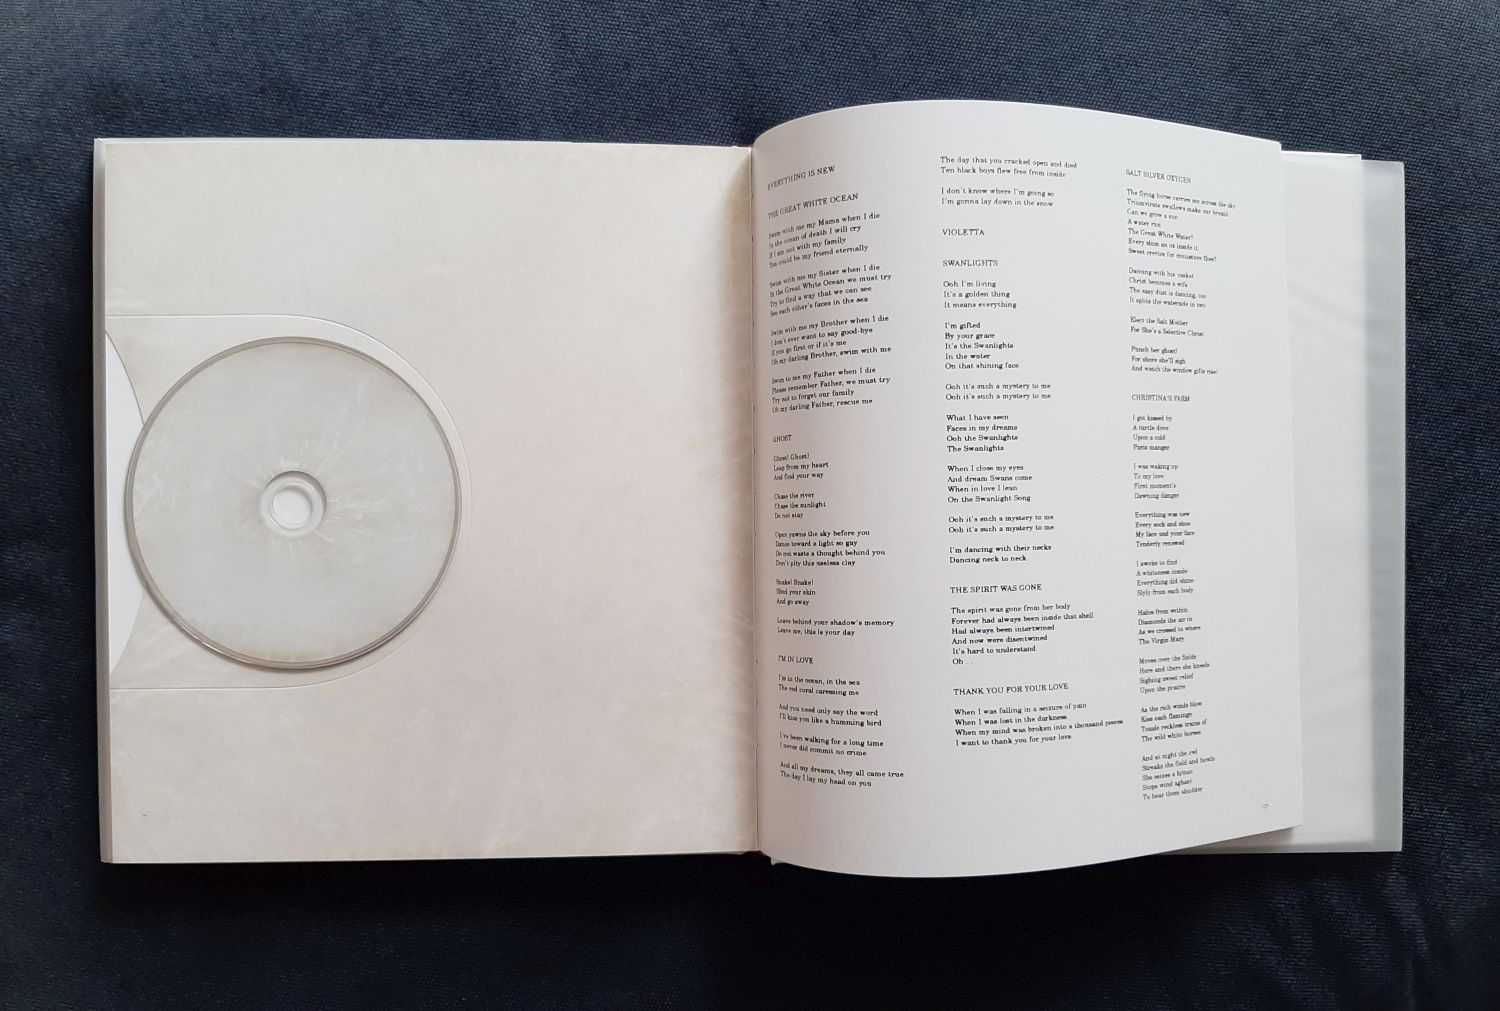 Livro e CD de Antony and The Johnsons, "Swanlights"